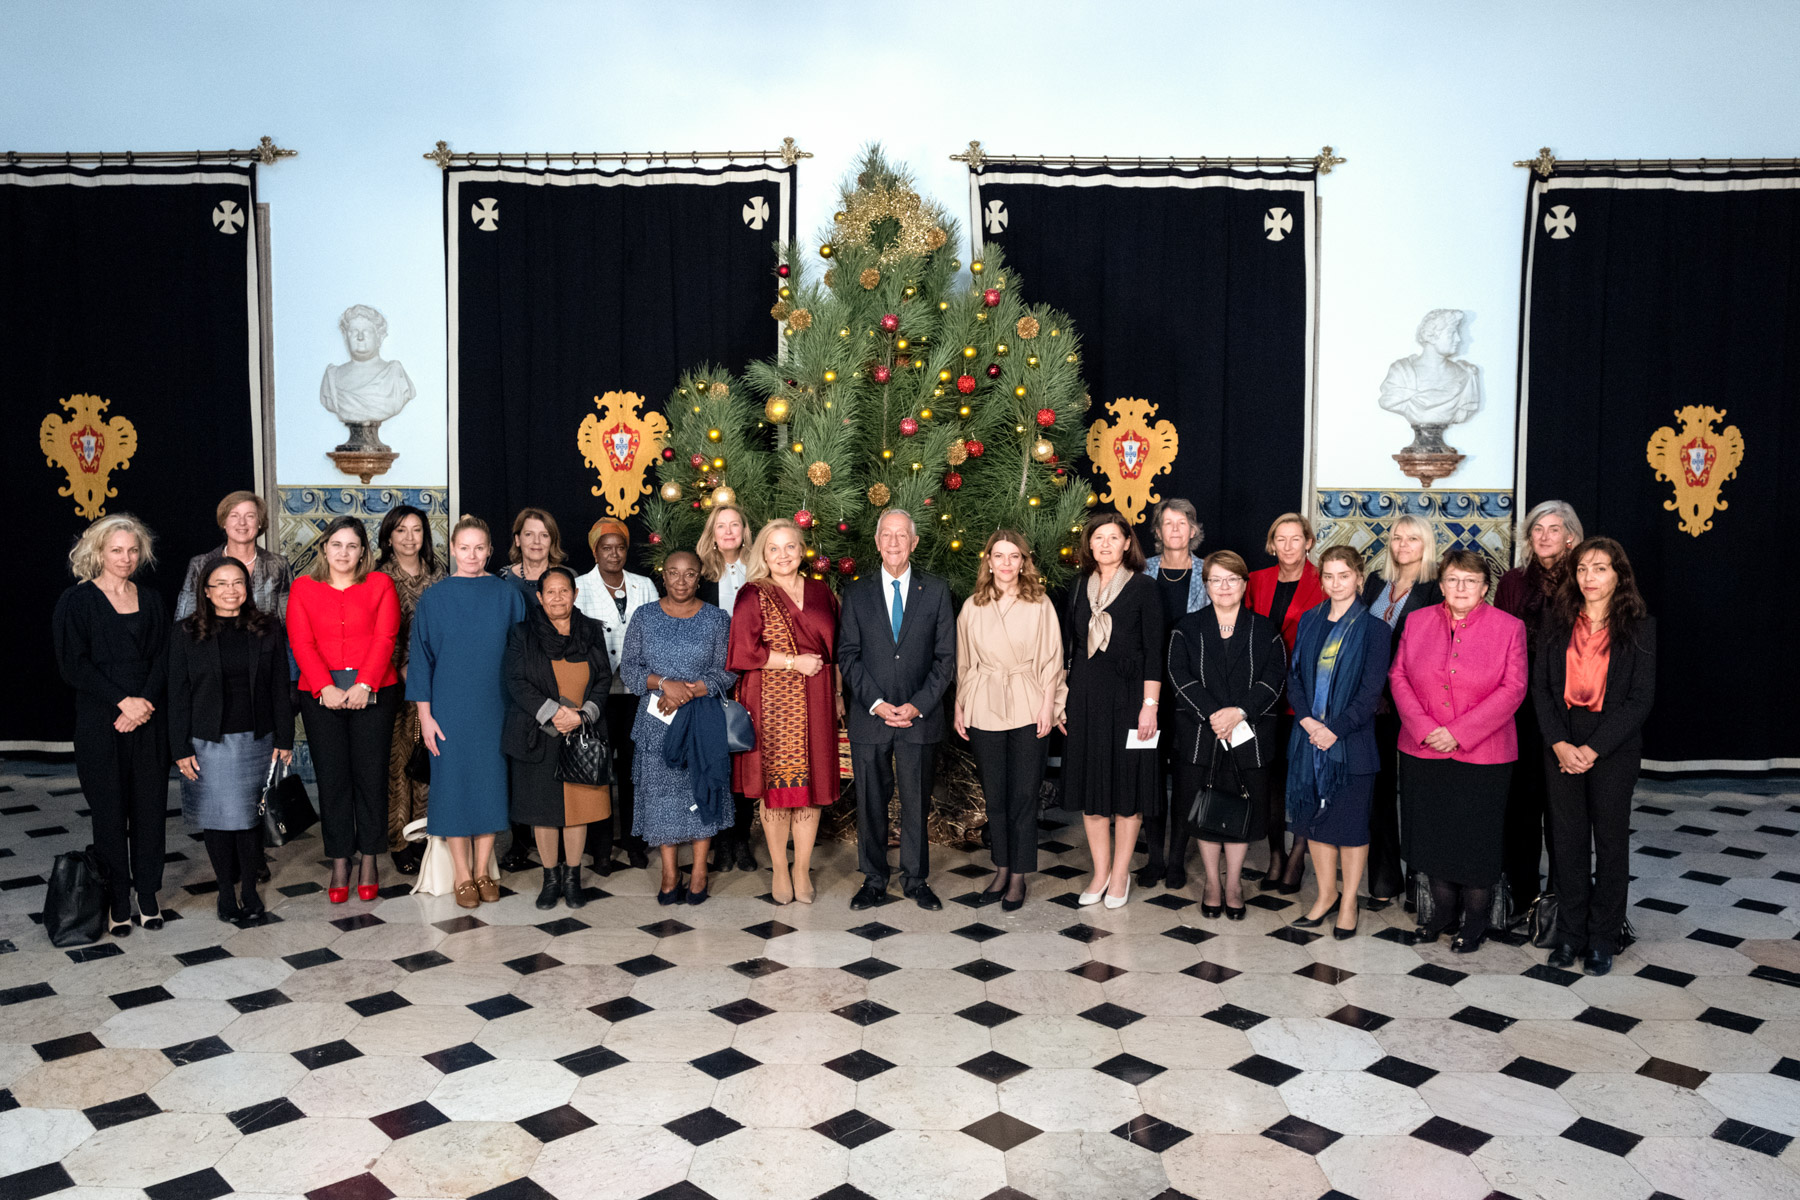 Almoço com representantes da Associação de Embaixadoras em Lisboa (AWA - Association of Women Ambassadors) no Palácio de Belém  Credits: © Rui Ochoa